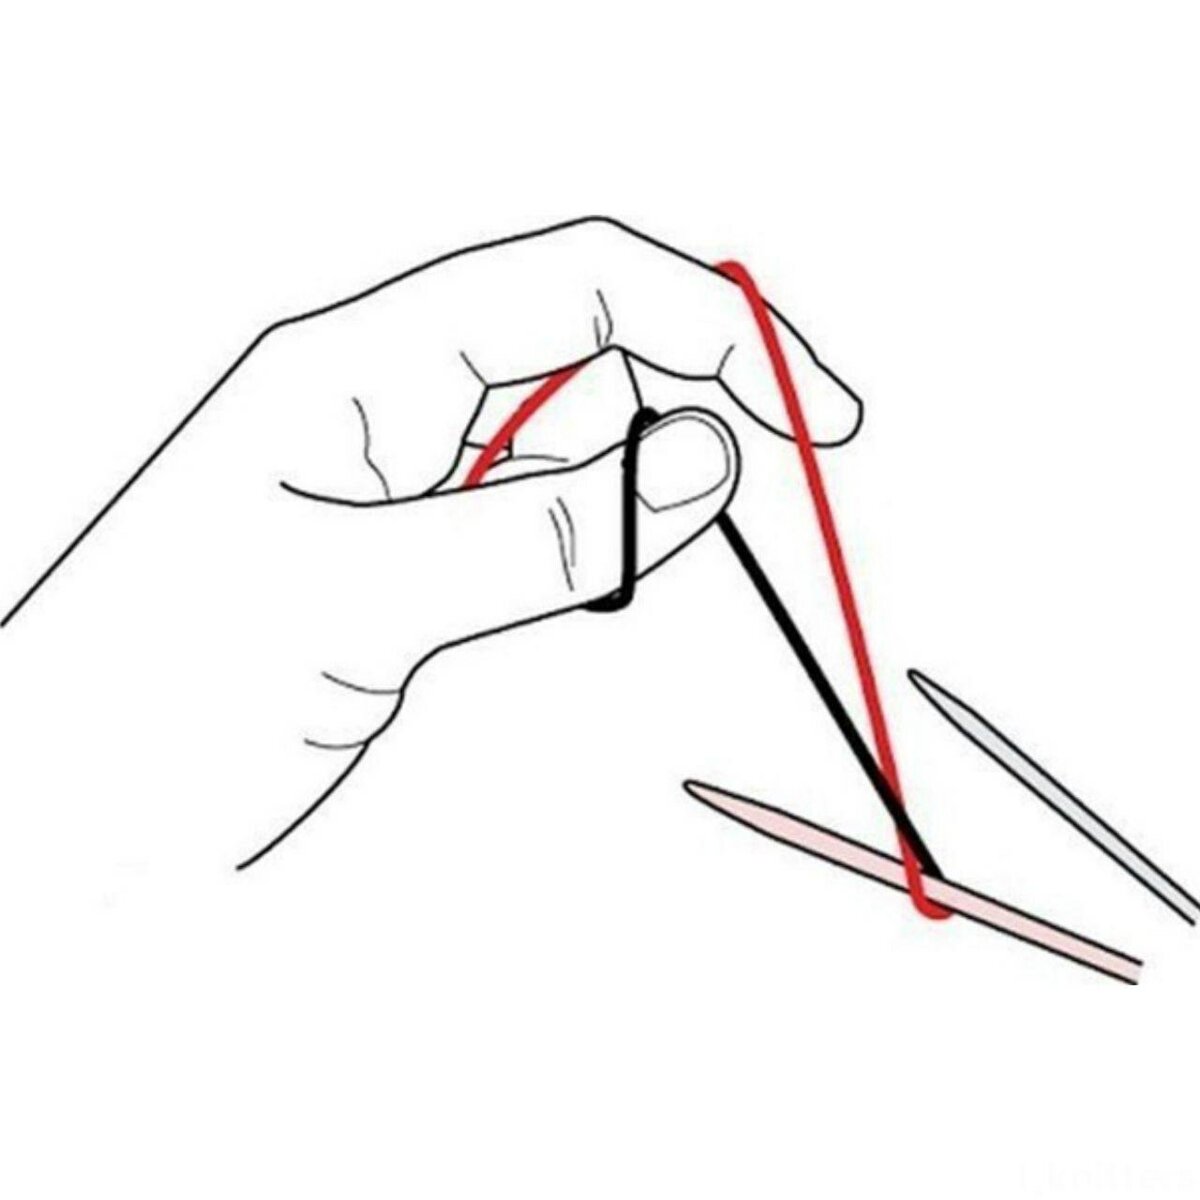 Тунисское вязание крючком - описание схем и узоров для начинающих